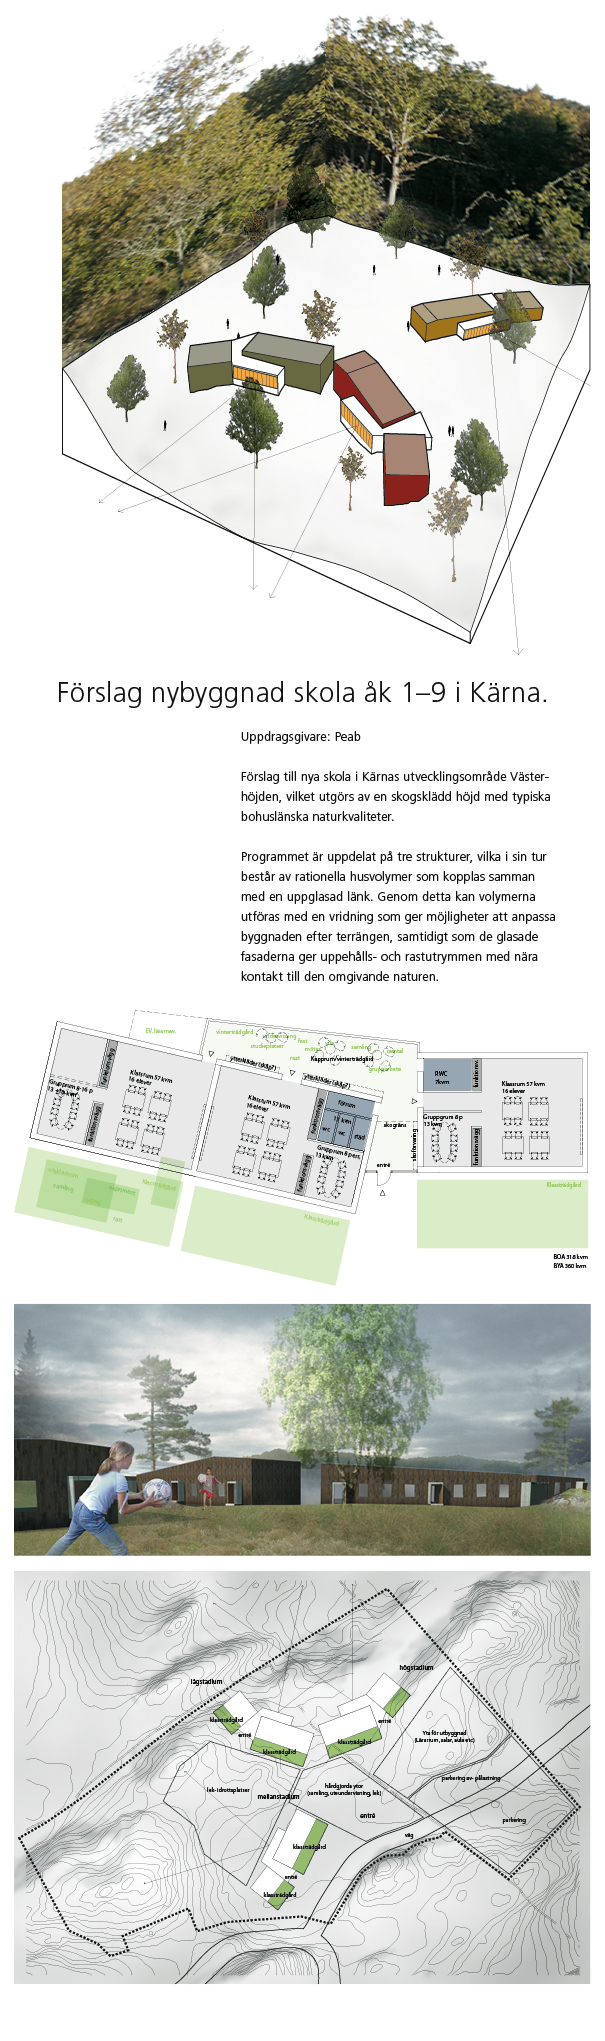 Helhetshus har på uppdrag av Peab ritat förslag på ny grundskola i Kärnas utvecklingsområde Västerhöjden. Kärna.